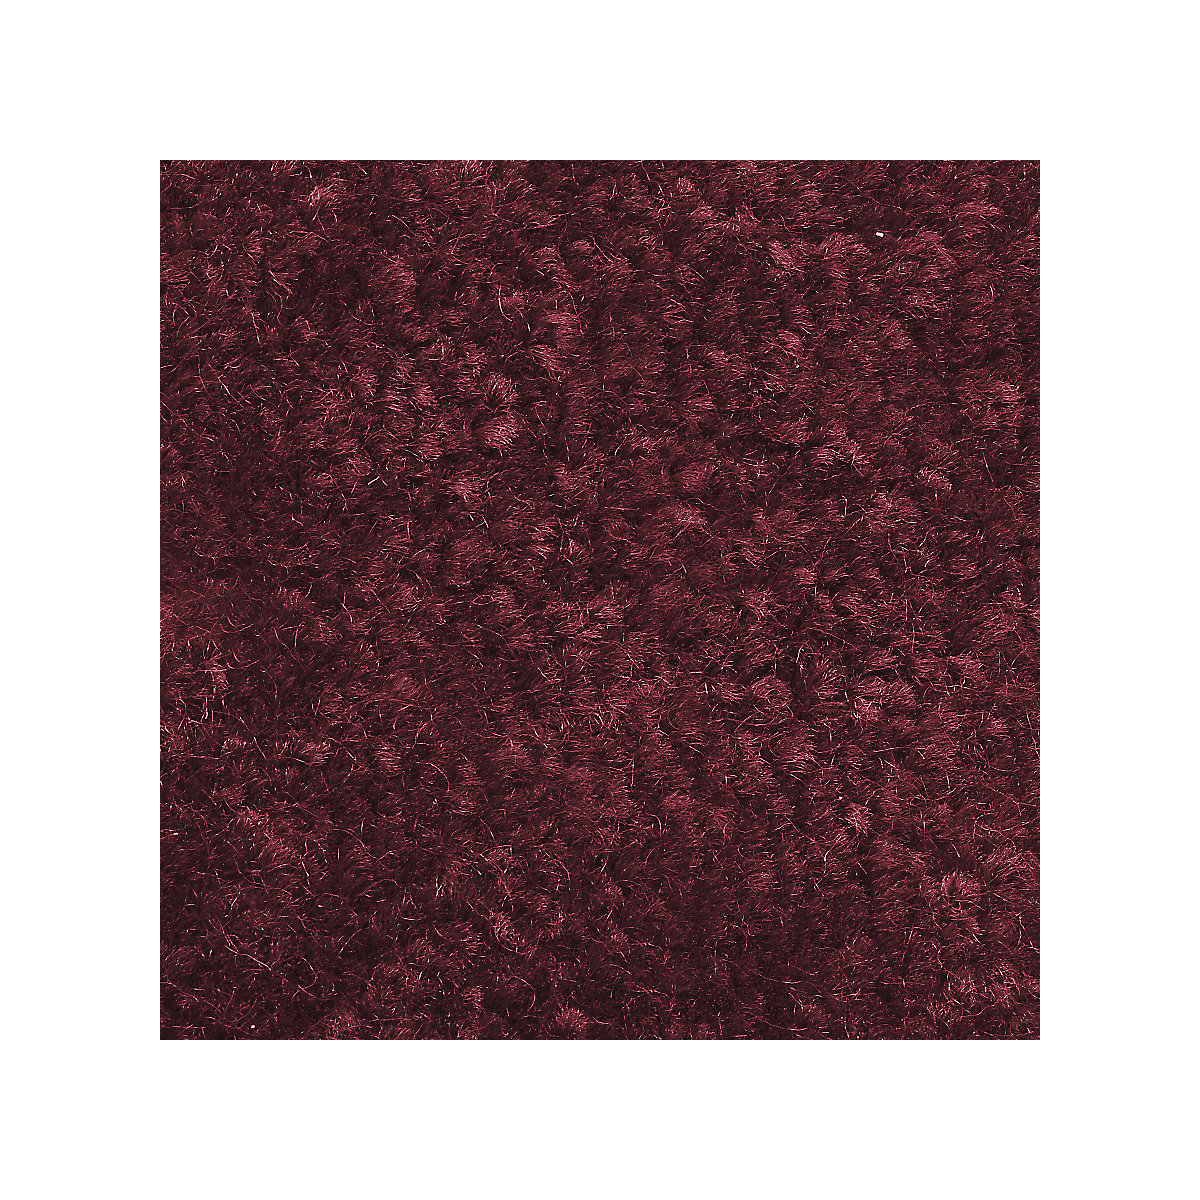 Mata wychwytująca brud do stosowania wewnątrz, runo z polipropylenu, dł. x szer. 1500 x 900 mm, czerwony